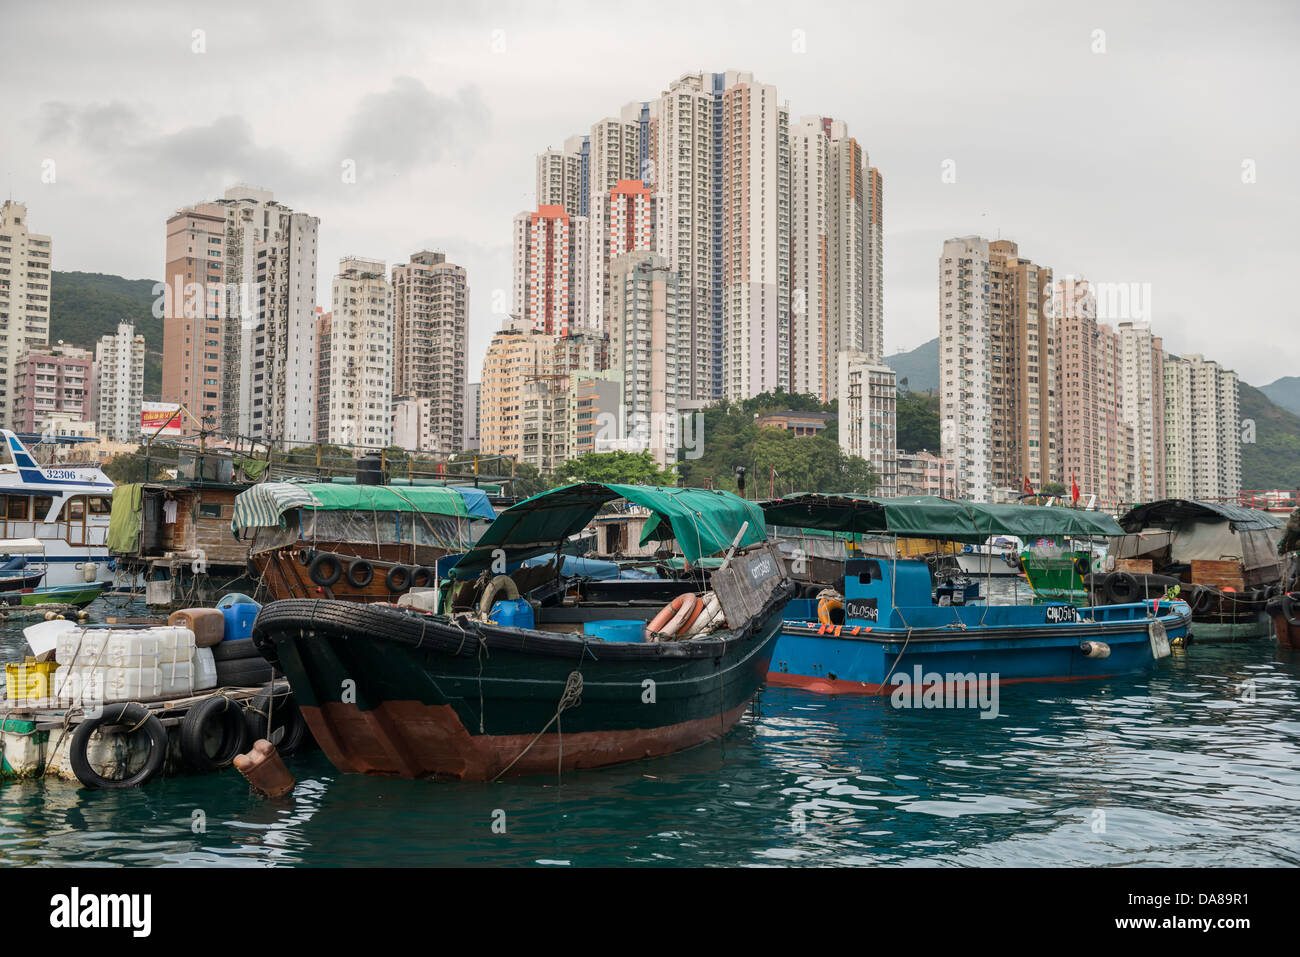 Fishing Boats in Aberdeen Harbour, Hong Kong Stock Photo: 57960981 - Alamy